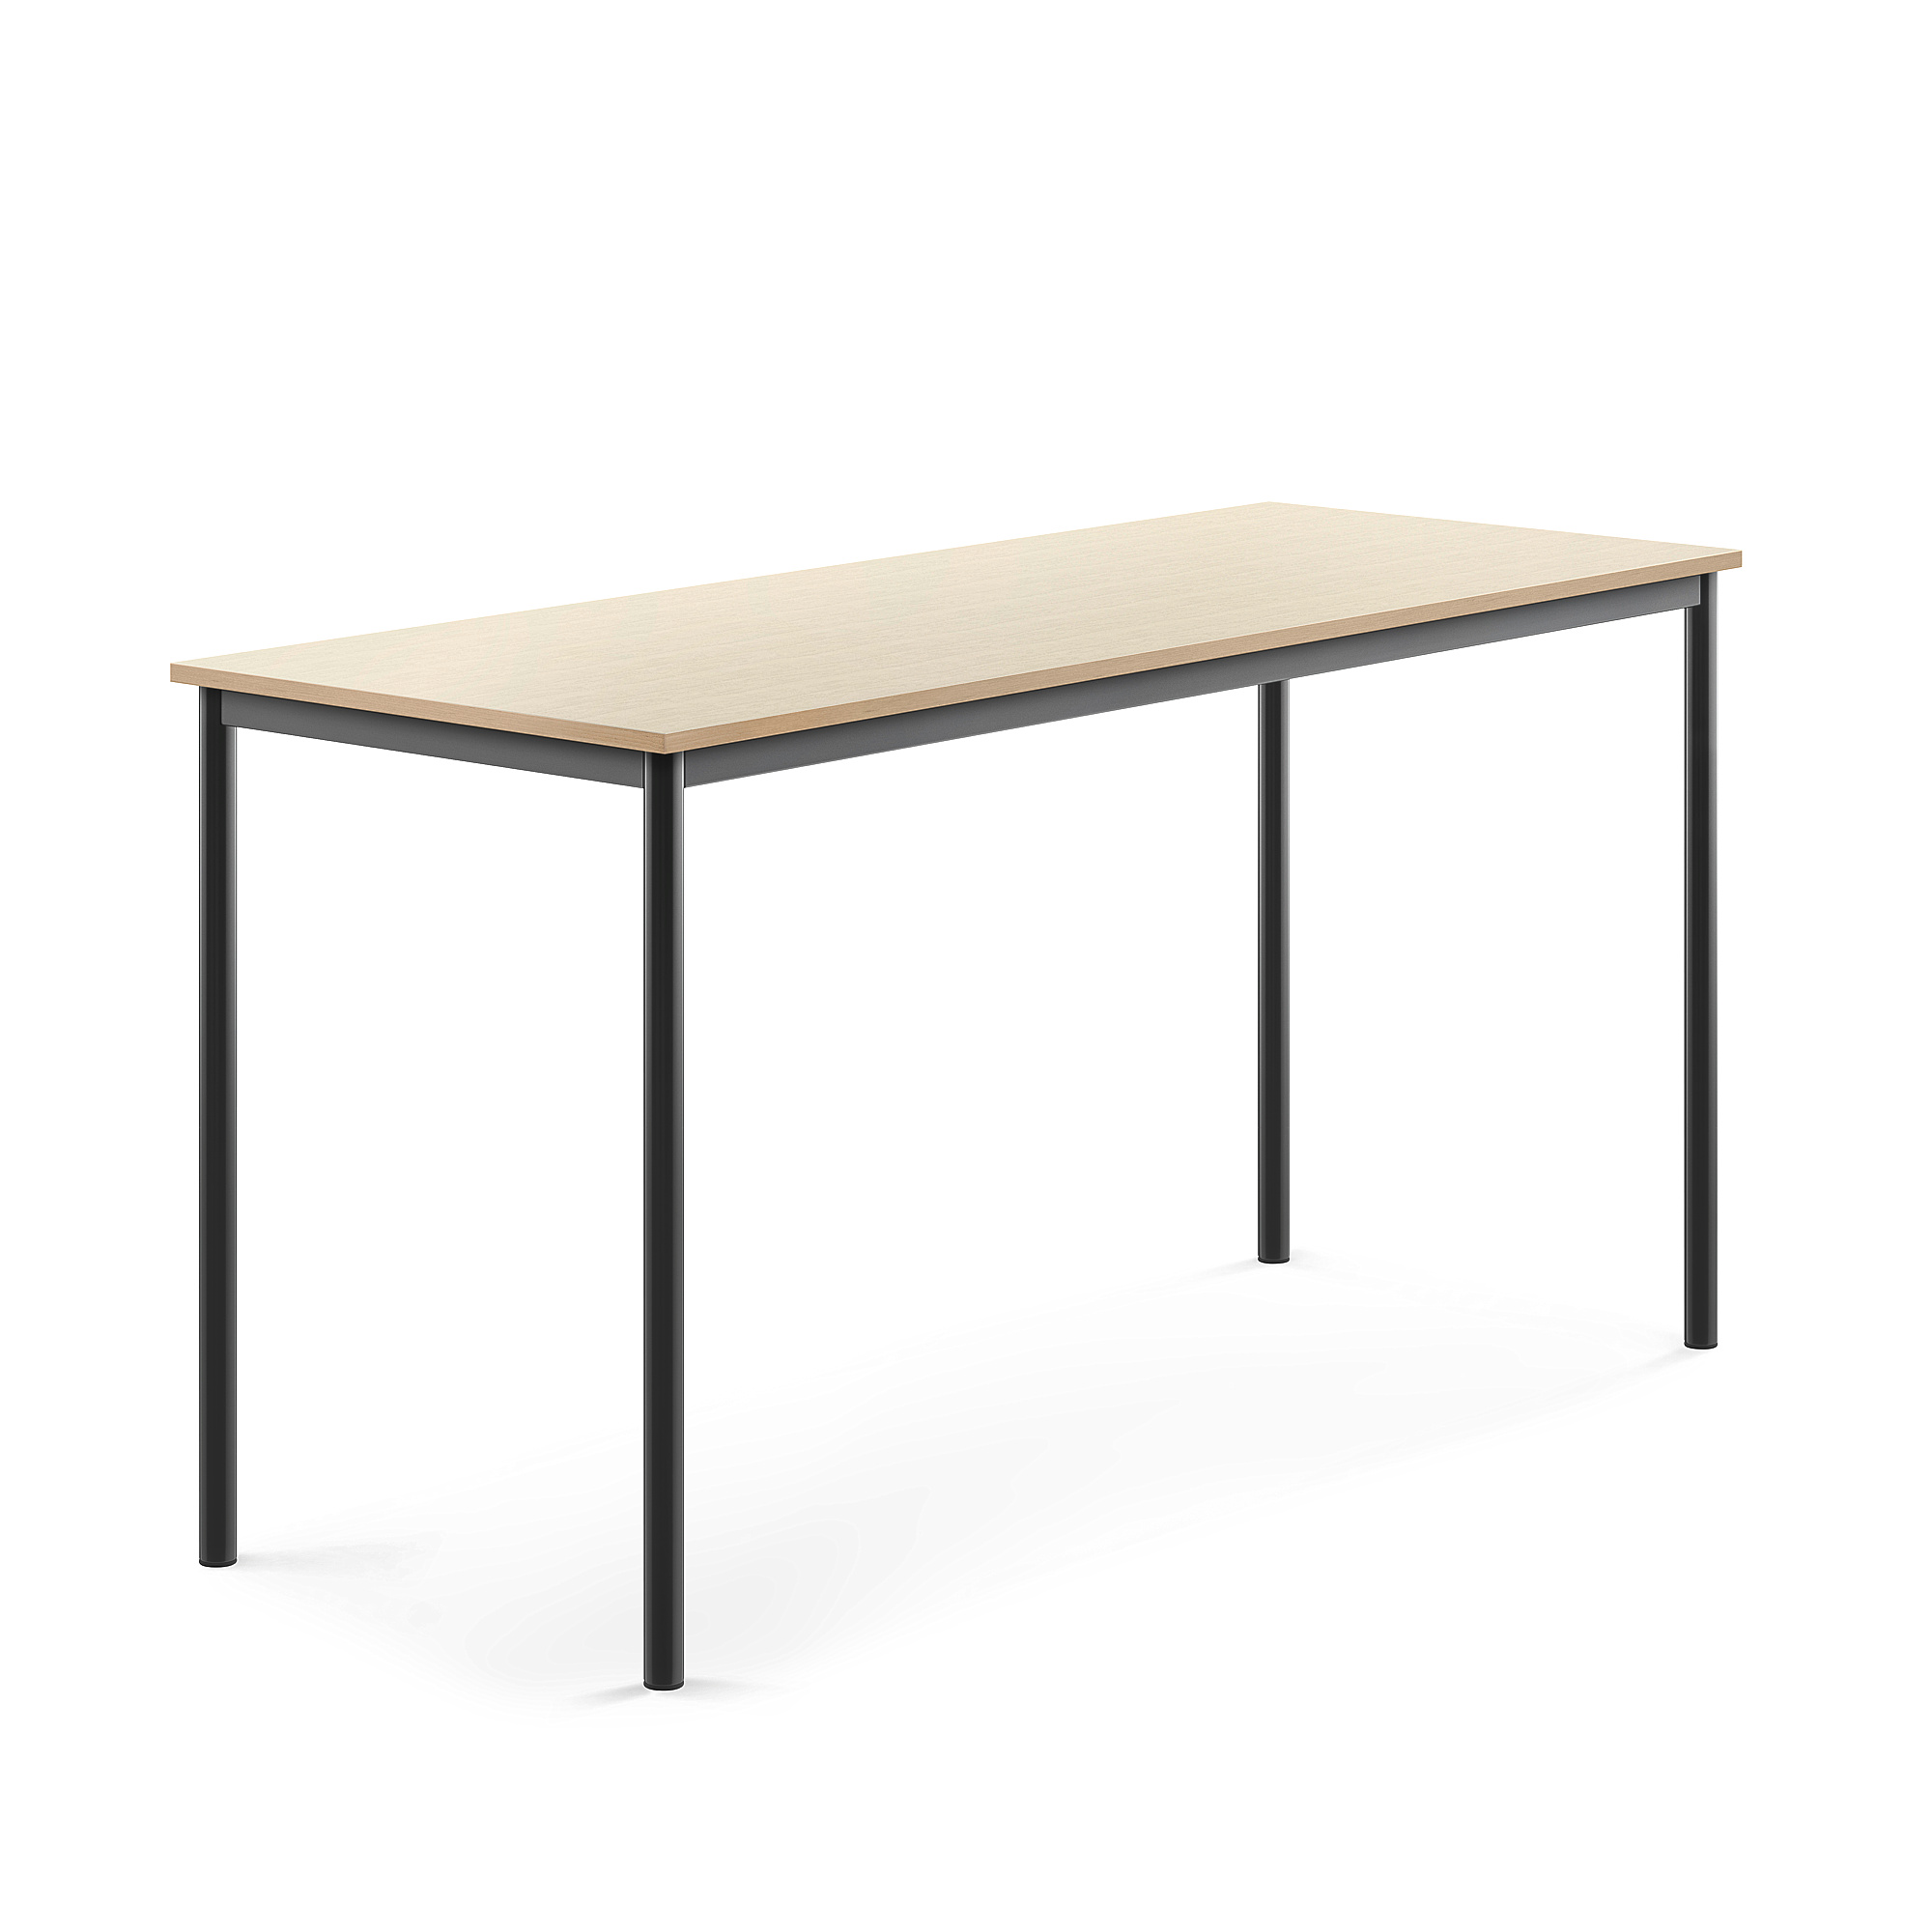 Stůl BORÅS, 1800x700x900 mm, antracitově šedé nohy, HPL deska, bříza